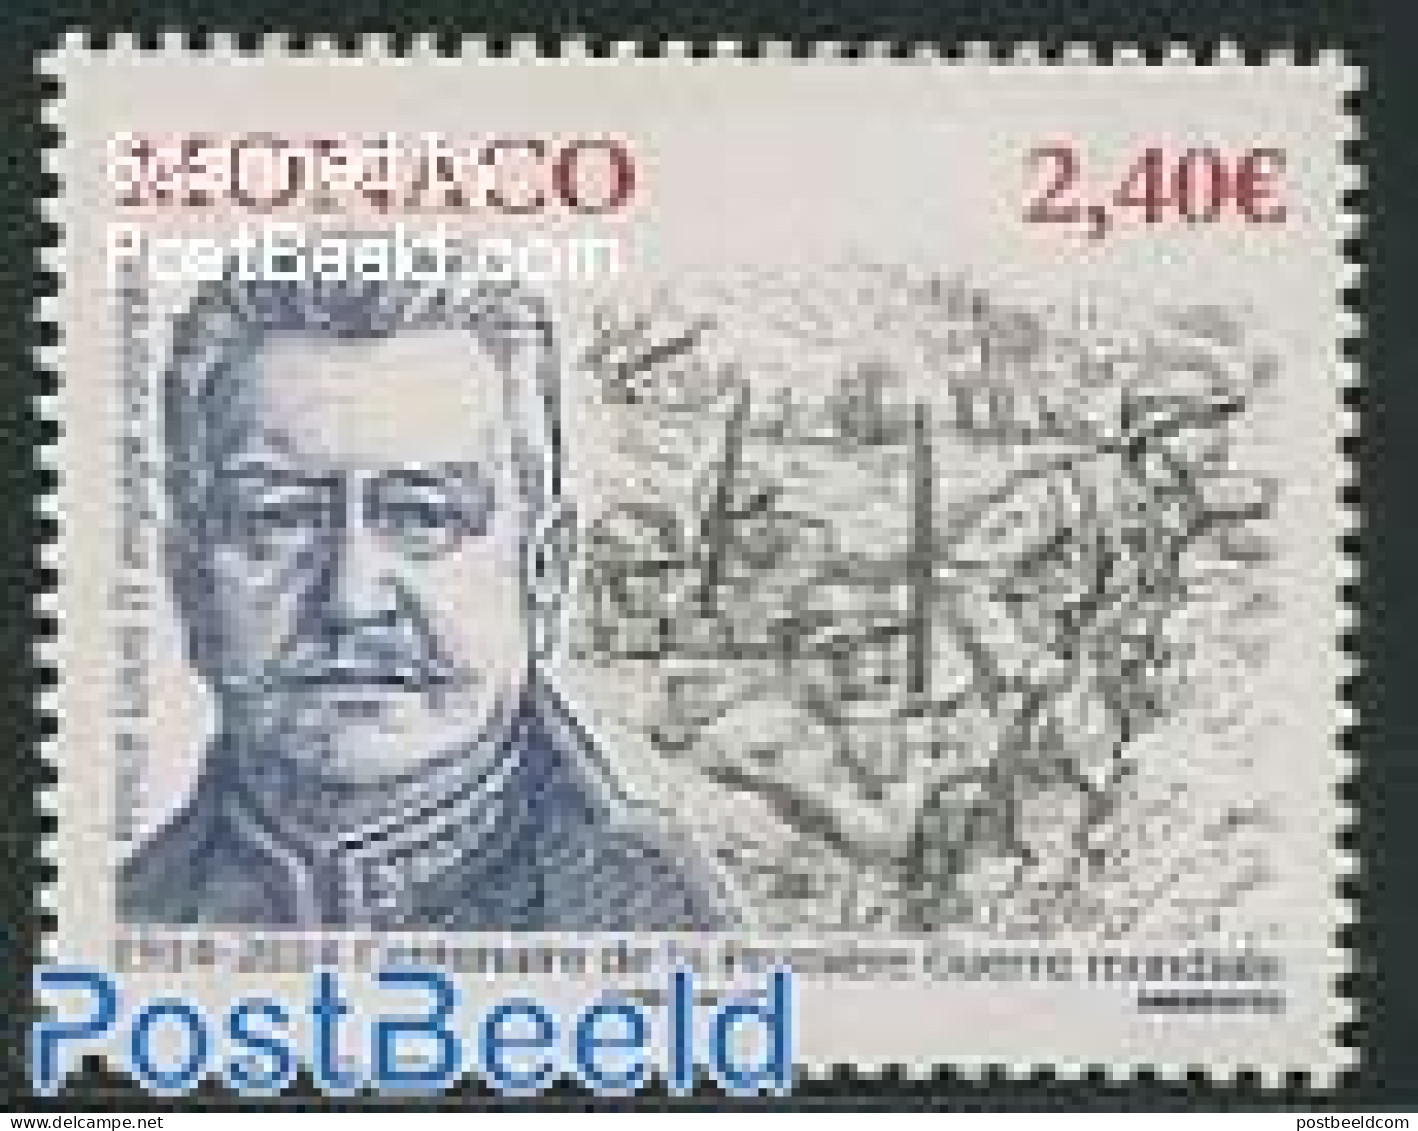 Monaco 2014 Word War I 1v, Mint NH, History - Militarism - World War I - Unused Stamps